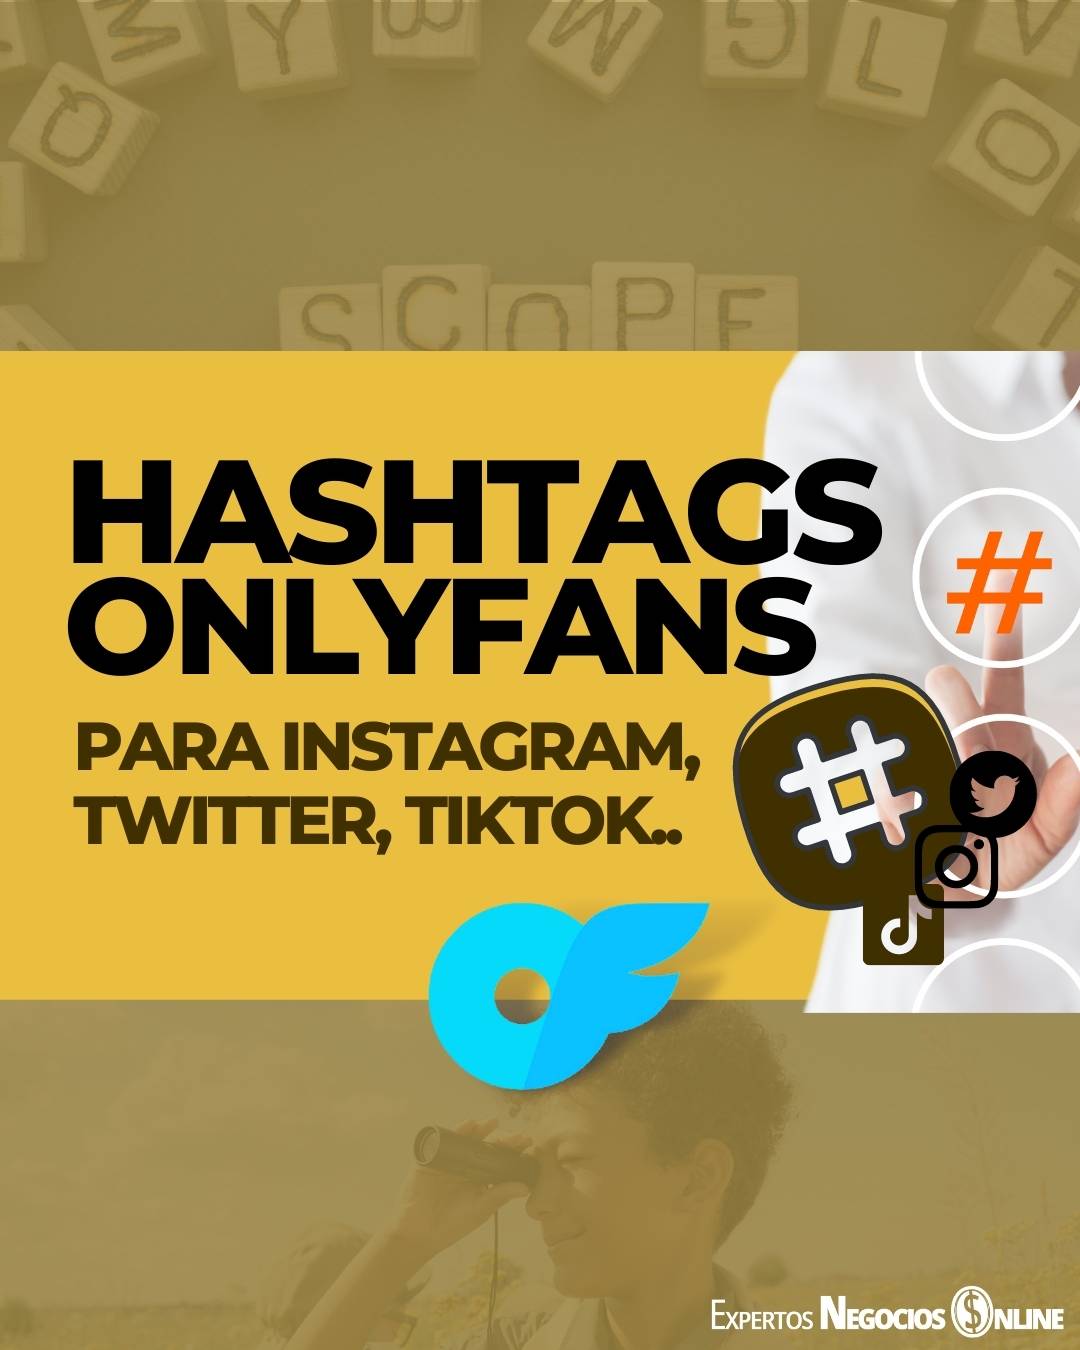 Hashtags OnlyFans en Twitter, Instagram, TikTok…